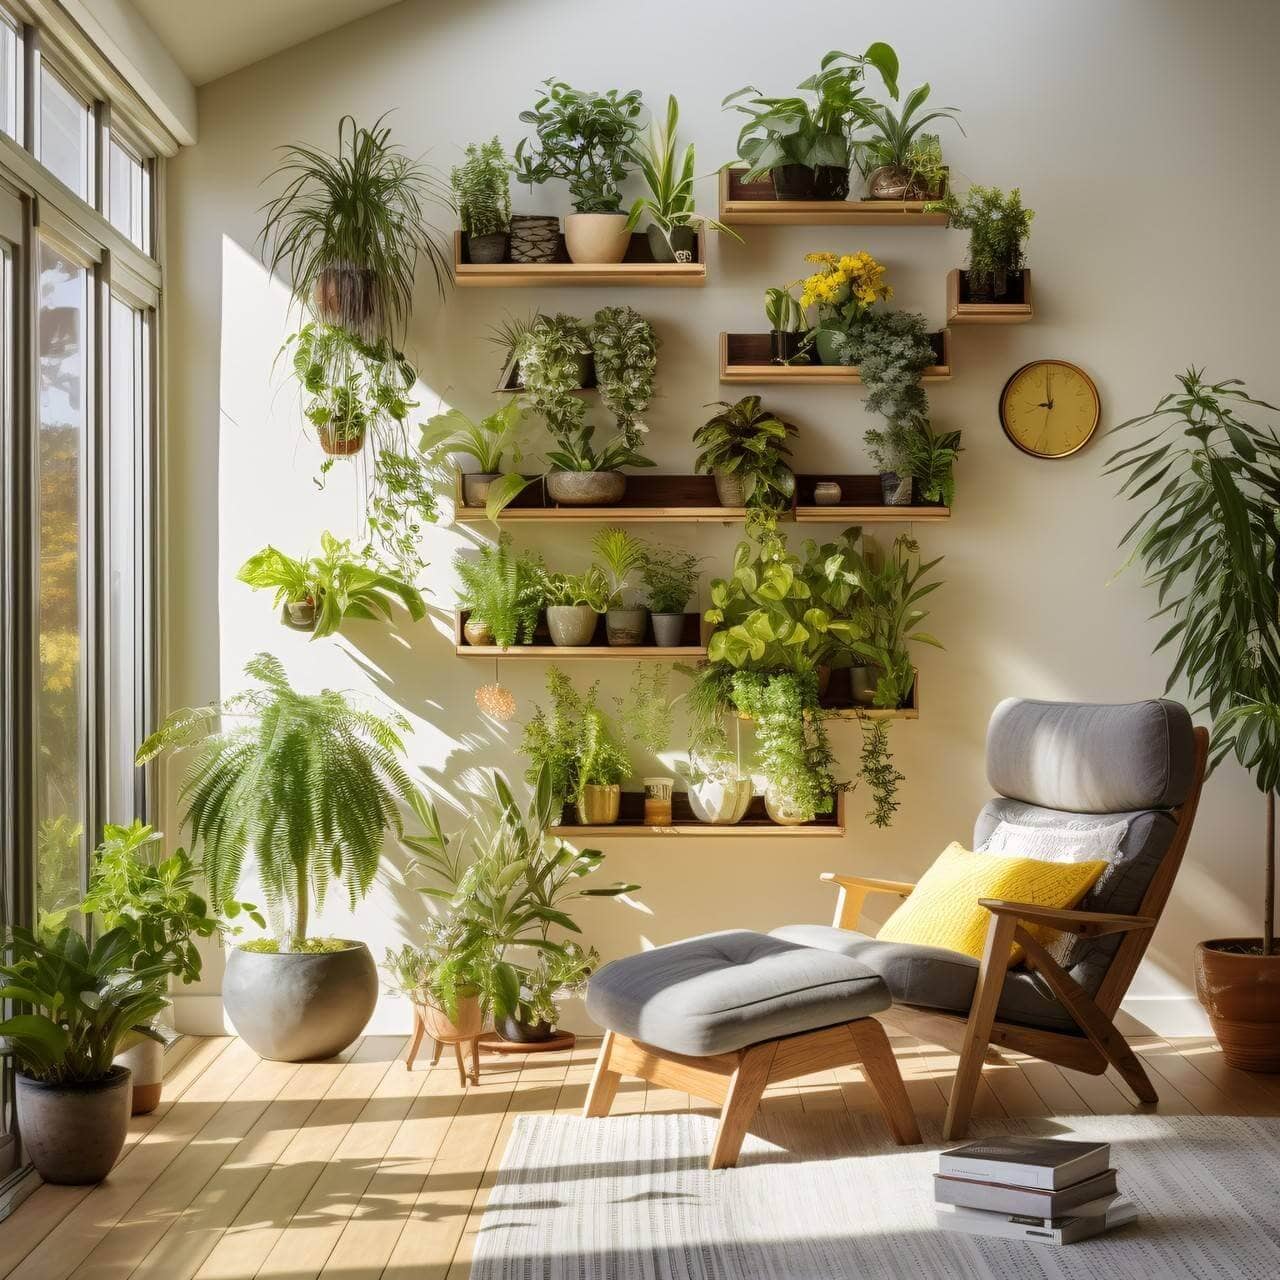 ambiente interno com poltrona, tapete, livros no chão, vaso com plantas e jardim vertical fixado na parede